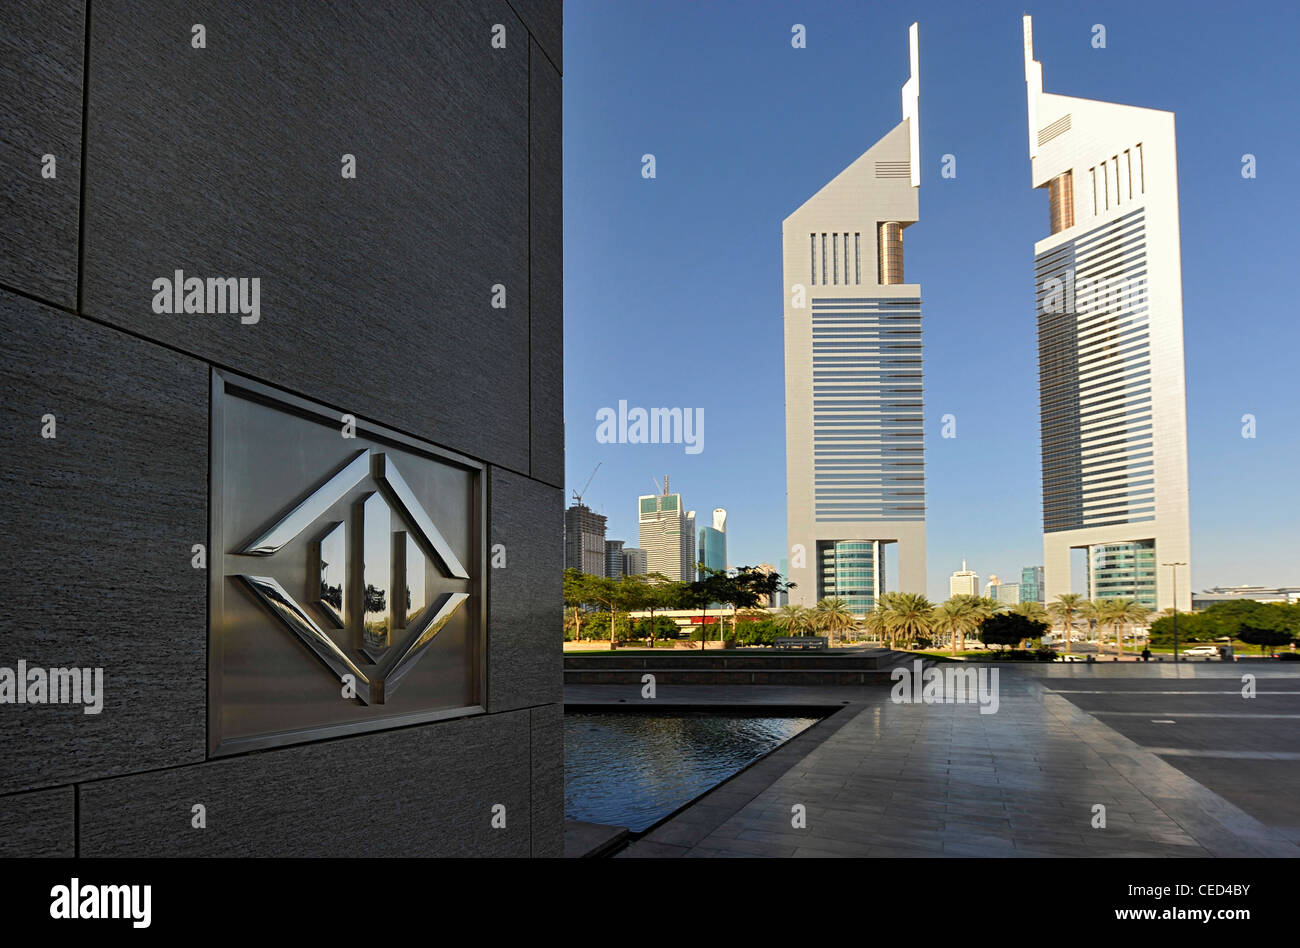 Unis tours, gratte-ciel, l'architecture moderne, du quartier financier, Dubaï, Émirats arabes unis, Moyen Orient Banque D'Images